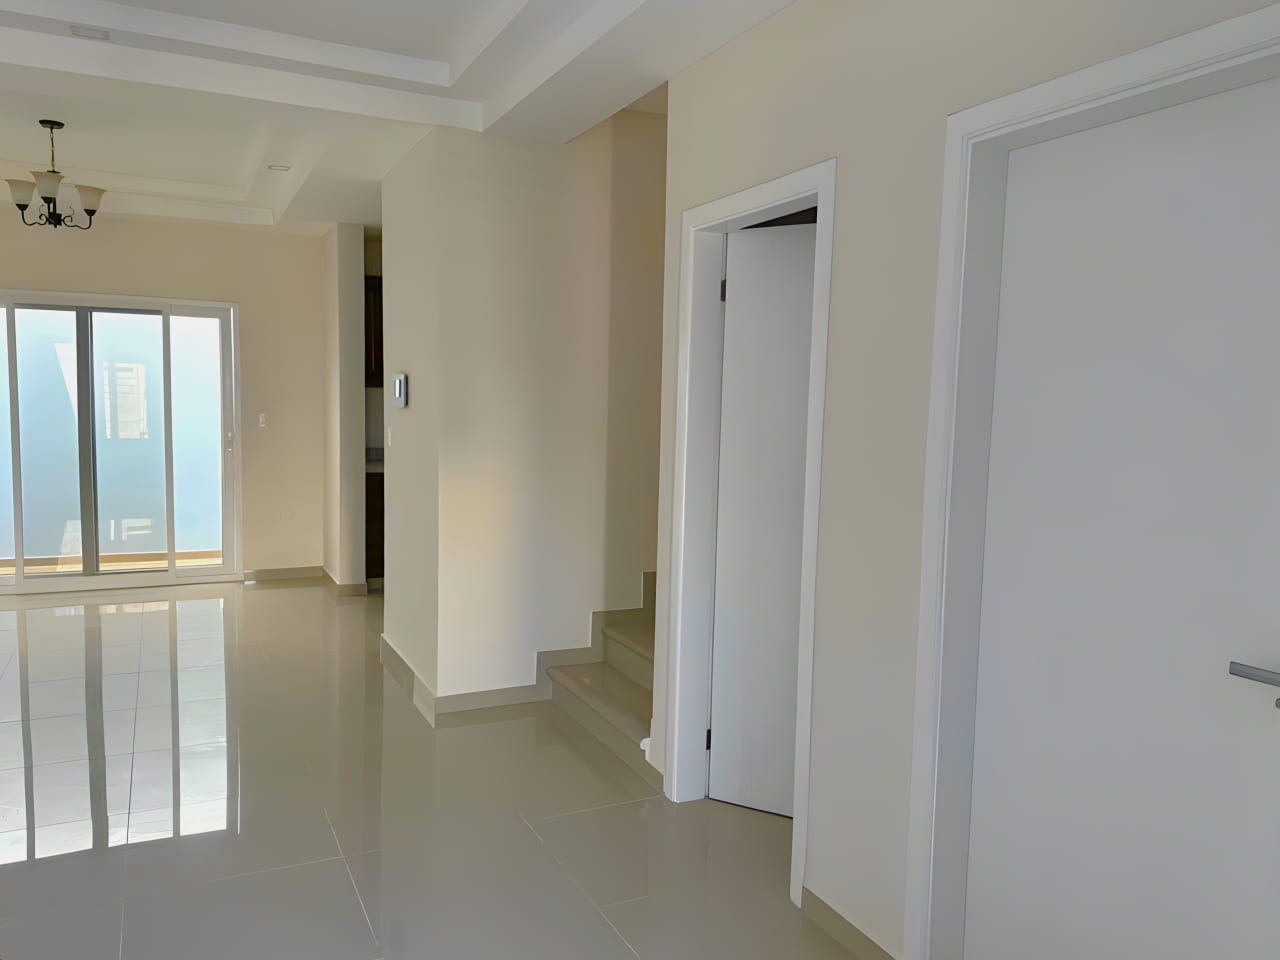 Área de acceso a dos habitaciones y cocina, con puertas de color blanco, suelo de porcelanta, puerta corrediza al fondo que brinda acceso al eterior de la casa.